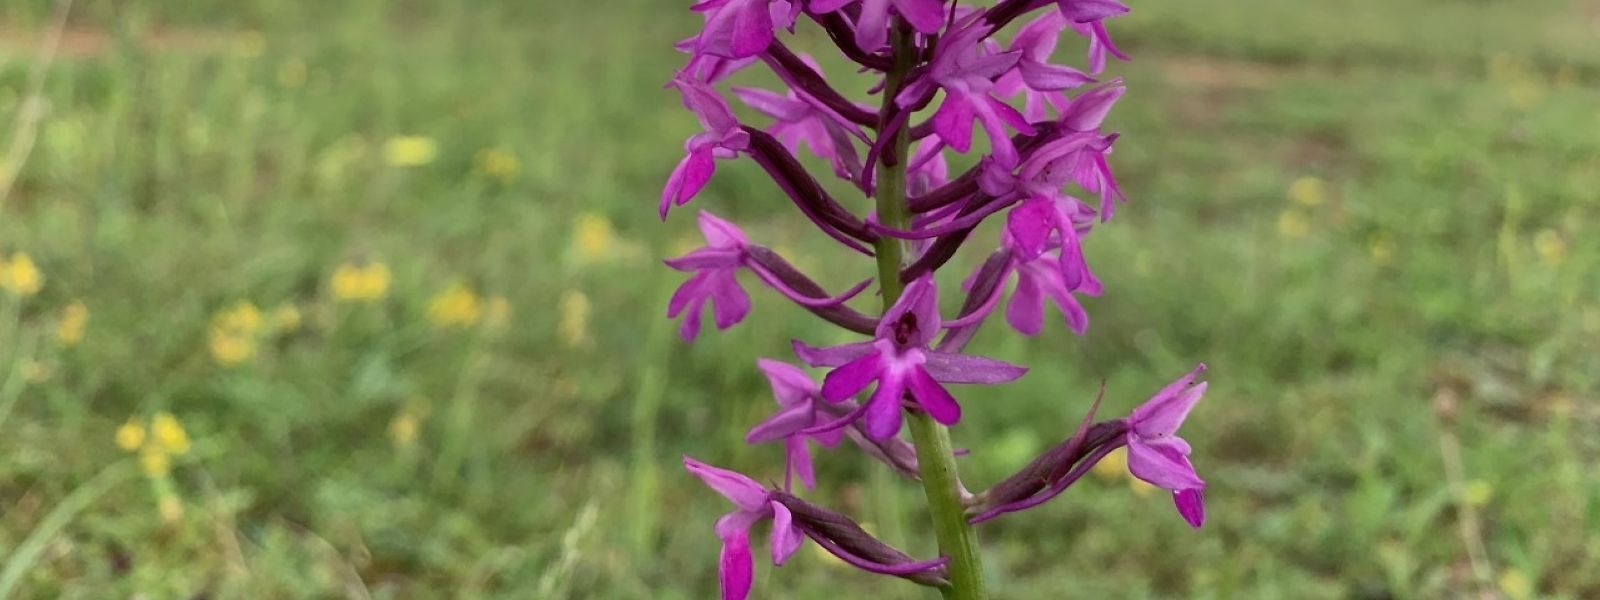 Wildorchideen gehören in Luxemburg zu den geschützten Arten.